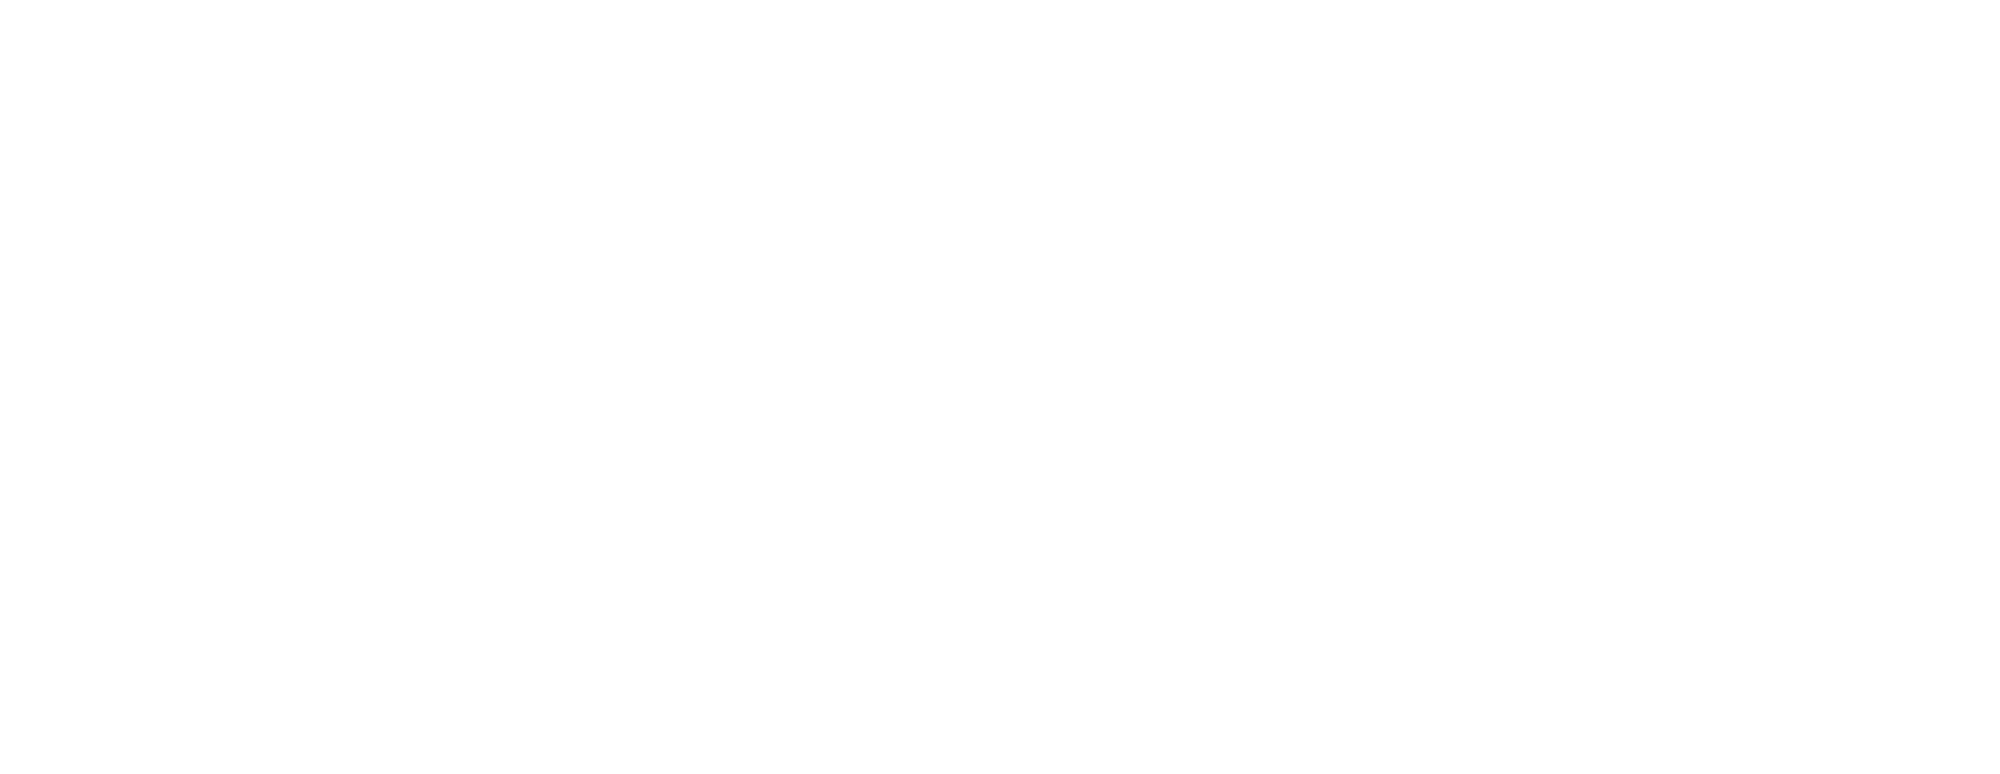 SS&C-Innovest-Logo-Horizontal-REV-2000w